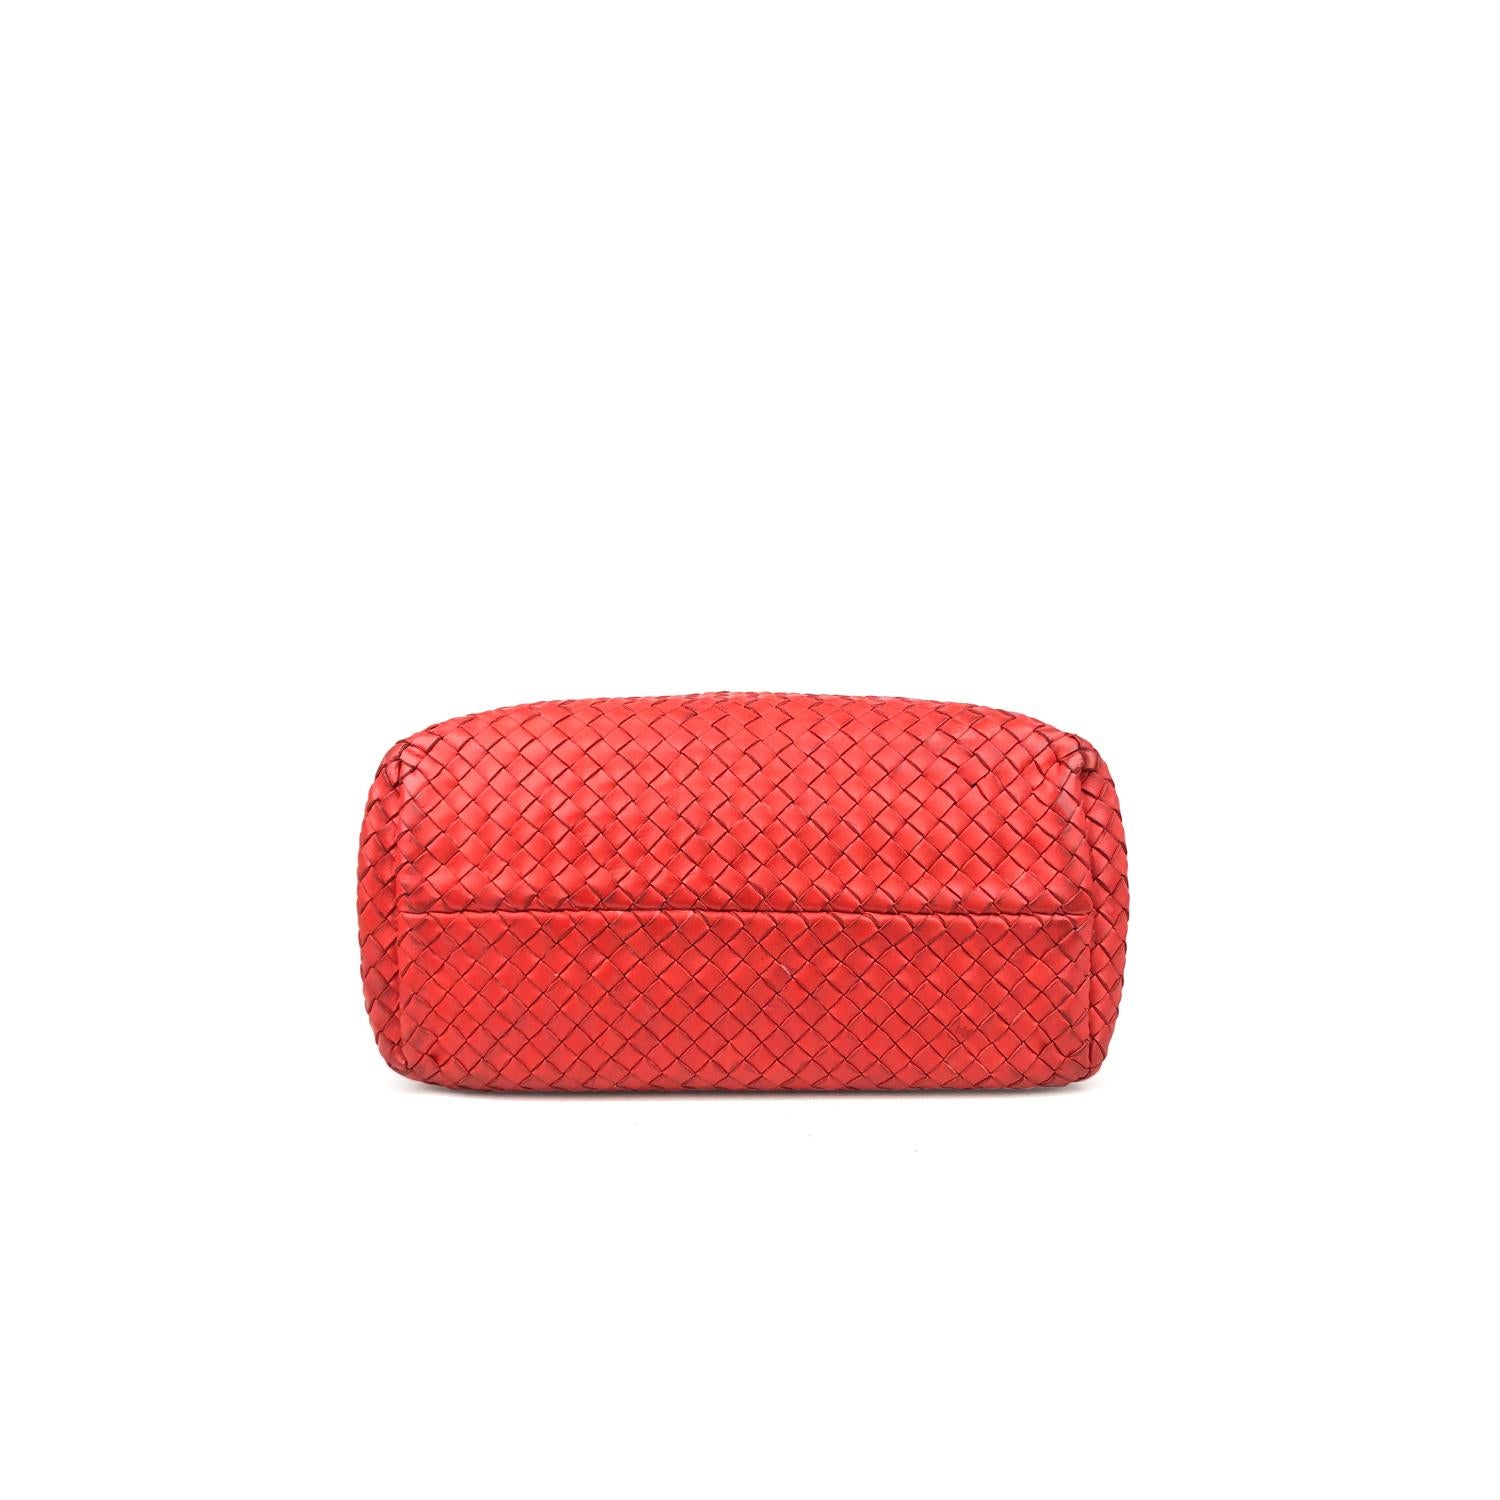 Red Intrecciato Leather Bottega Veneta Small Cabat Tote Bag For Sale 2